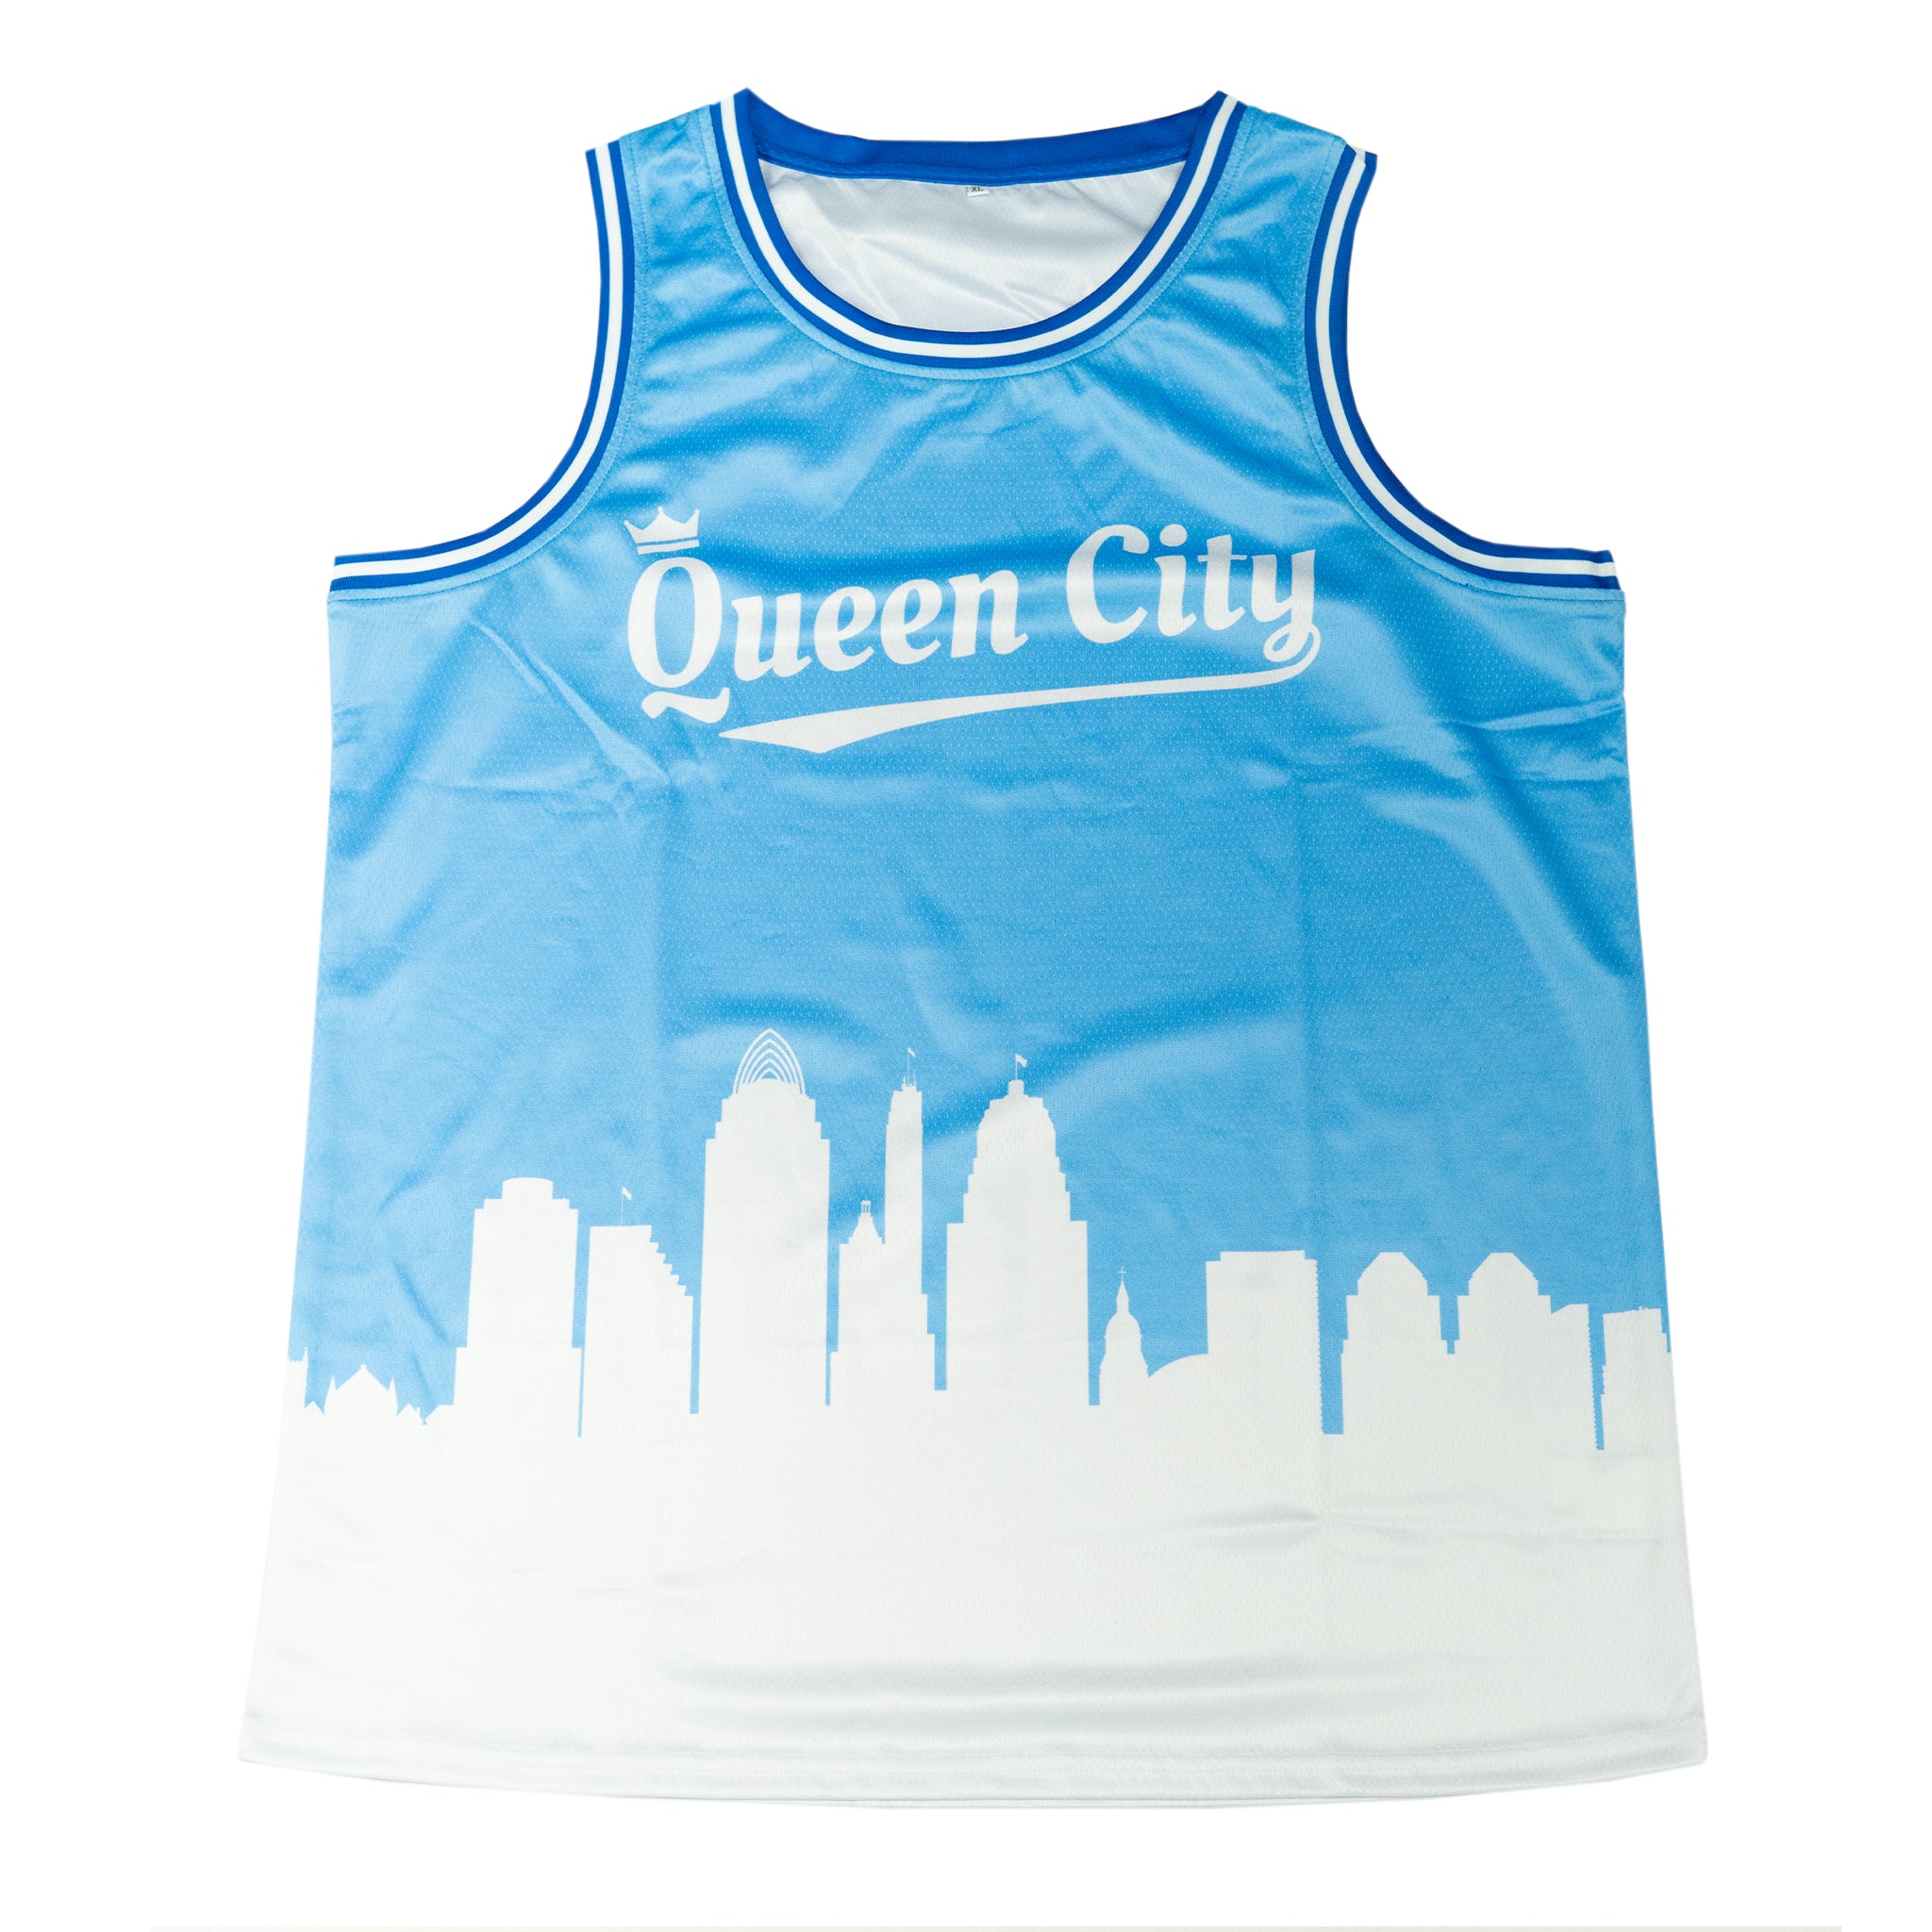 Queen City Basketball Jersey